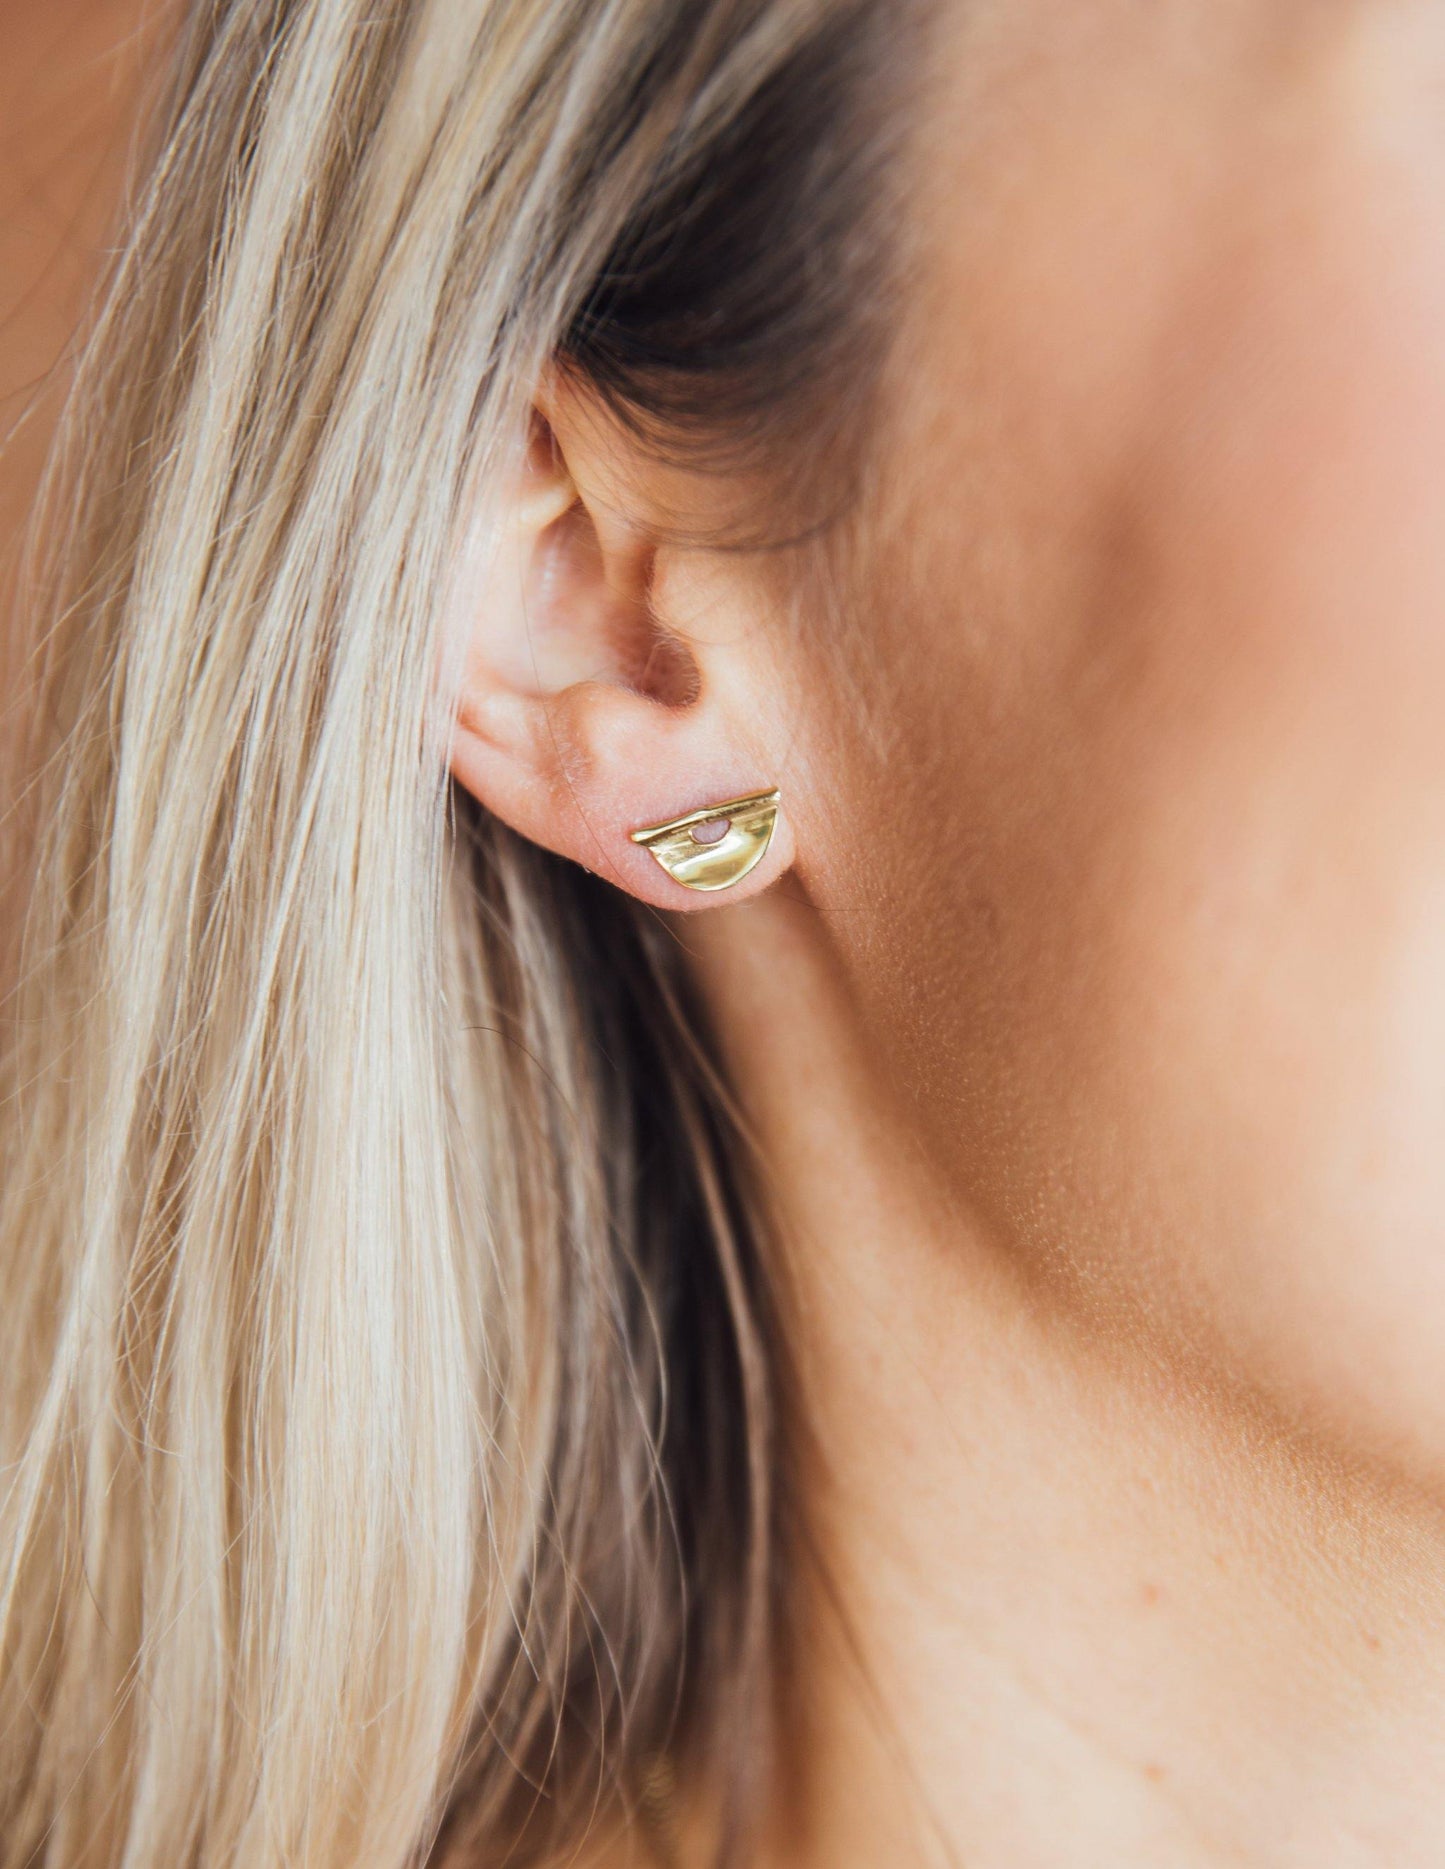 Brass or Sterling Silver stud earrings